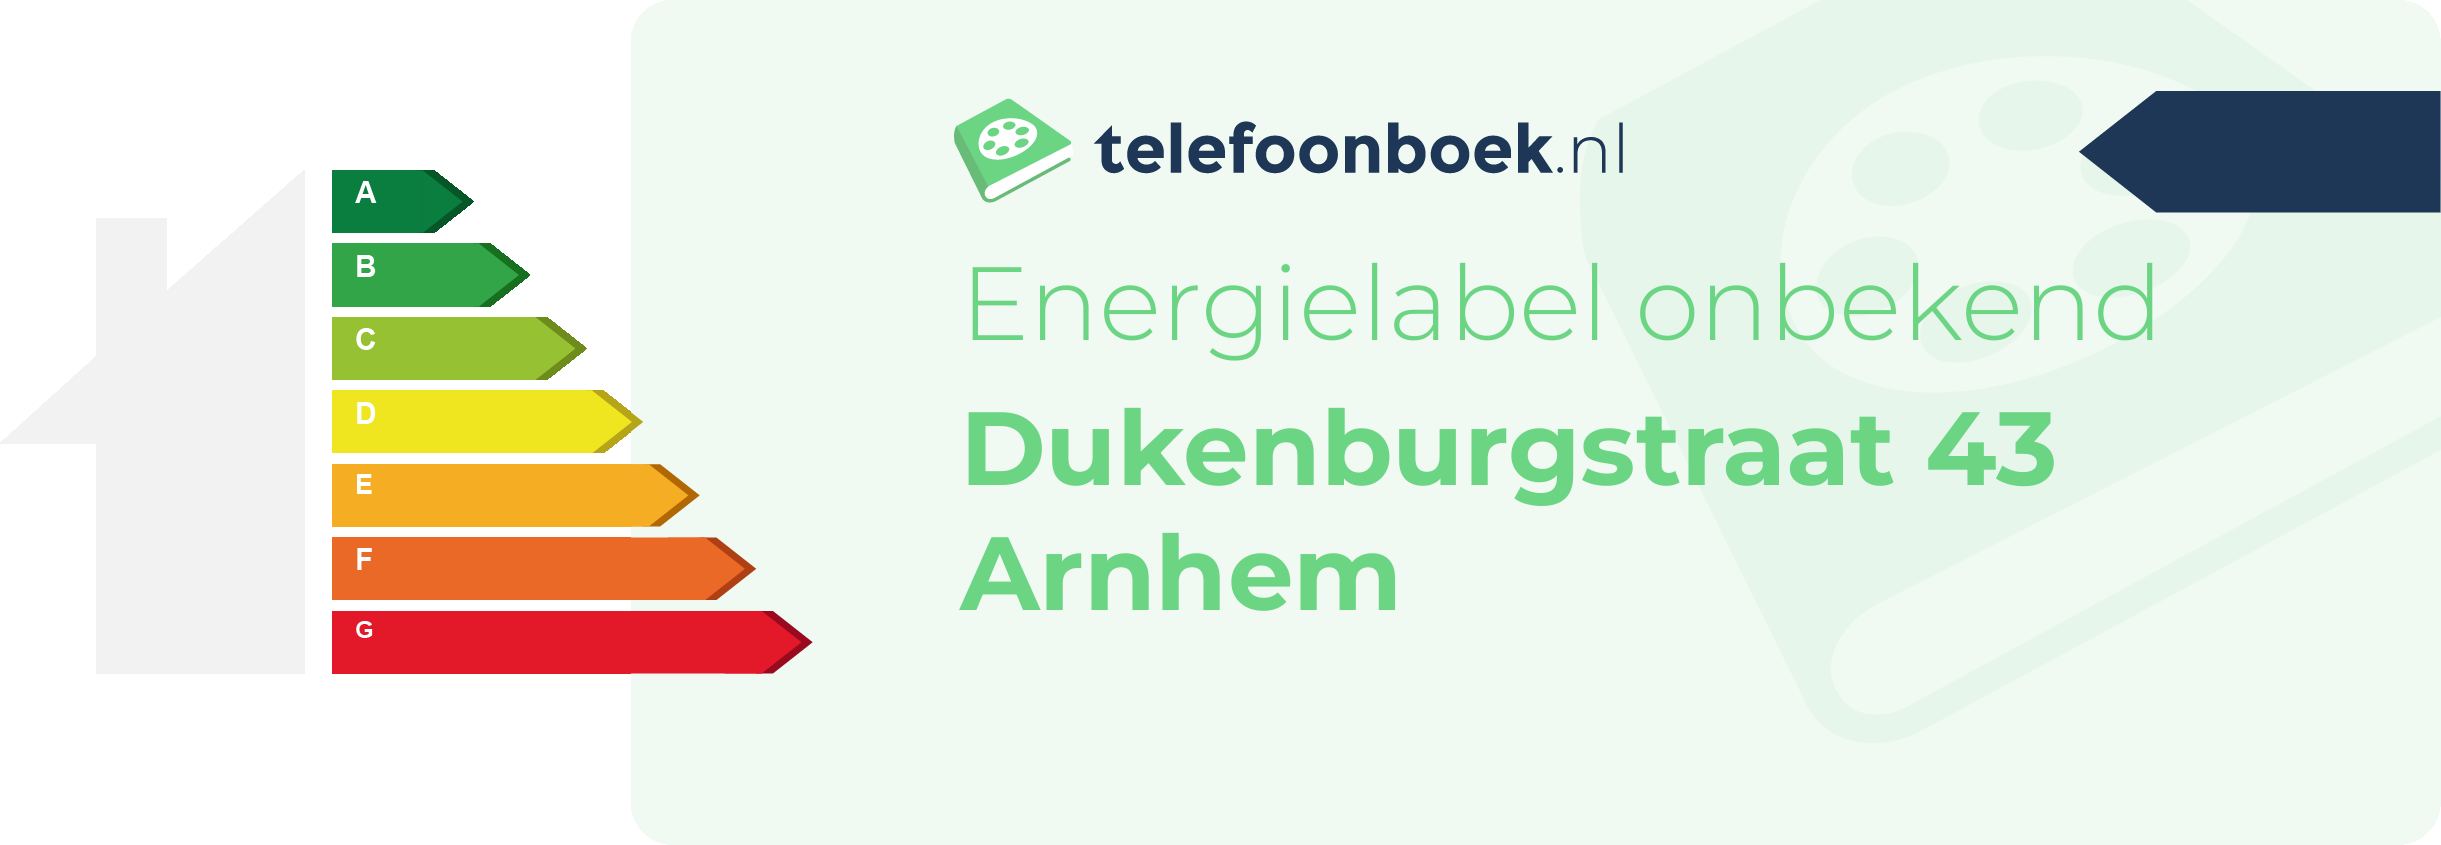 Energielabel Dukenburgstraat 43 Arnhem